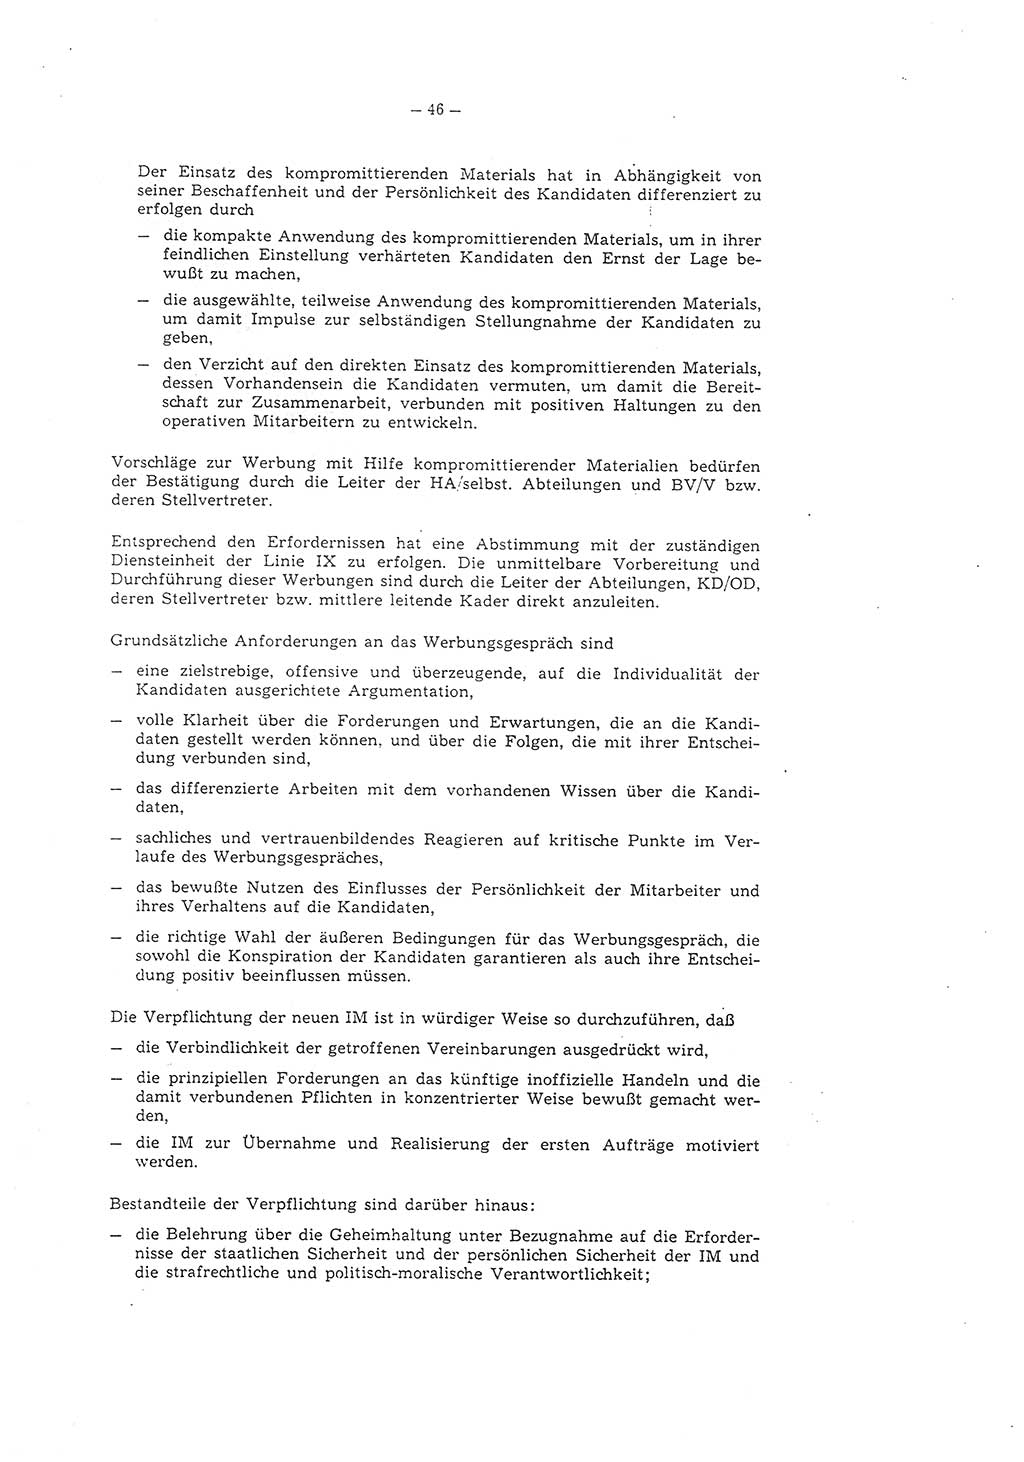 Richtlinie 1/79 für die Arbeit mit Inoffiziellen Mitarbeitern (IM) und Gesellschaftlichen Mitarbeitern für Sicherheit (GMS), Deutsche Demokratische Republik (DDR), Ministerium für Staatssicherheit (MfS), Der Minister (Mielke), Geheime Verschlußsache (GVS) ooo8-1/79, Berlin 1979, Seite 46 (RL 1/79 DDR MfS Min. GVS ooo8-1/79 1979, S. 46)